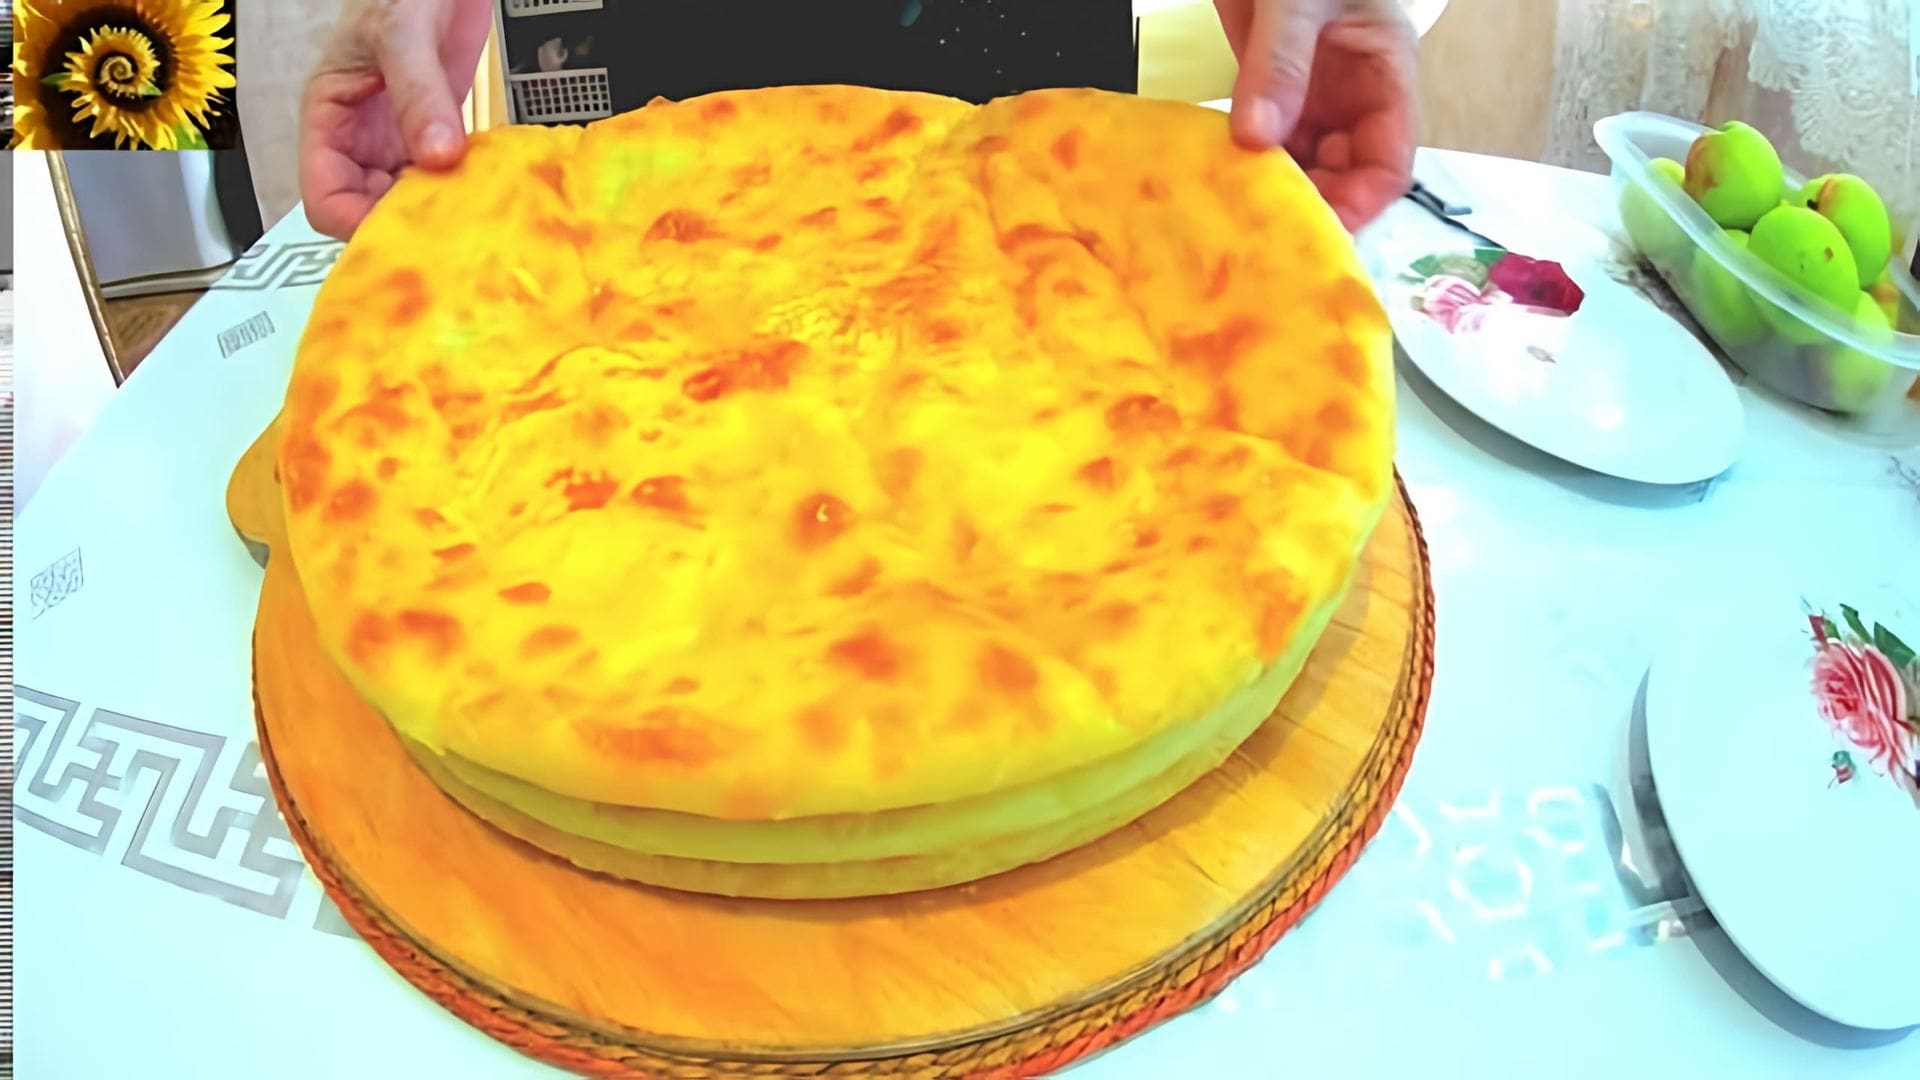 В этом видео демонстрируется процесс приготовления осетинских пирогов с начинкой из картофеля и сыра